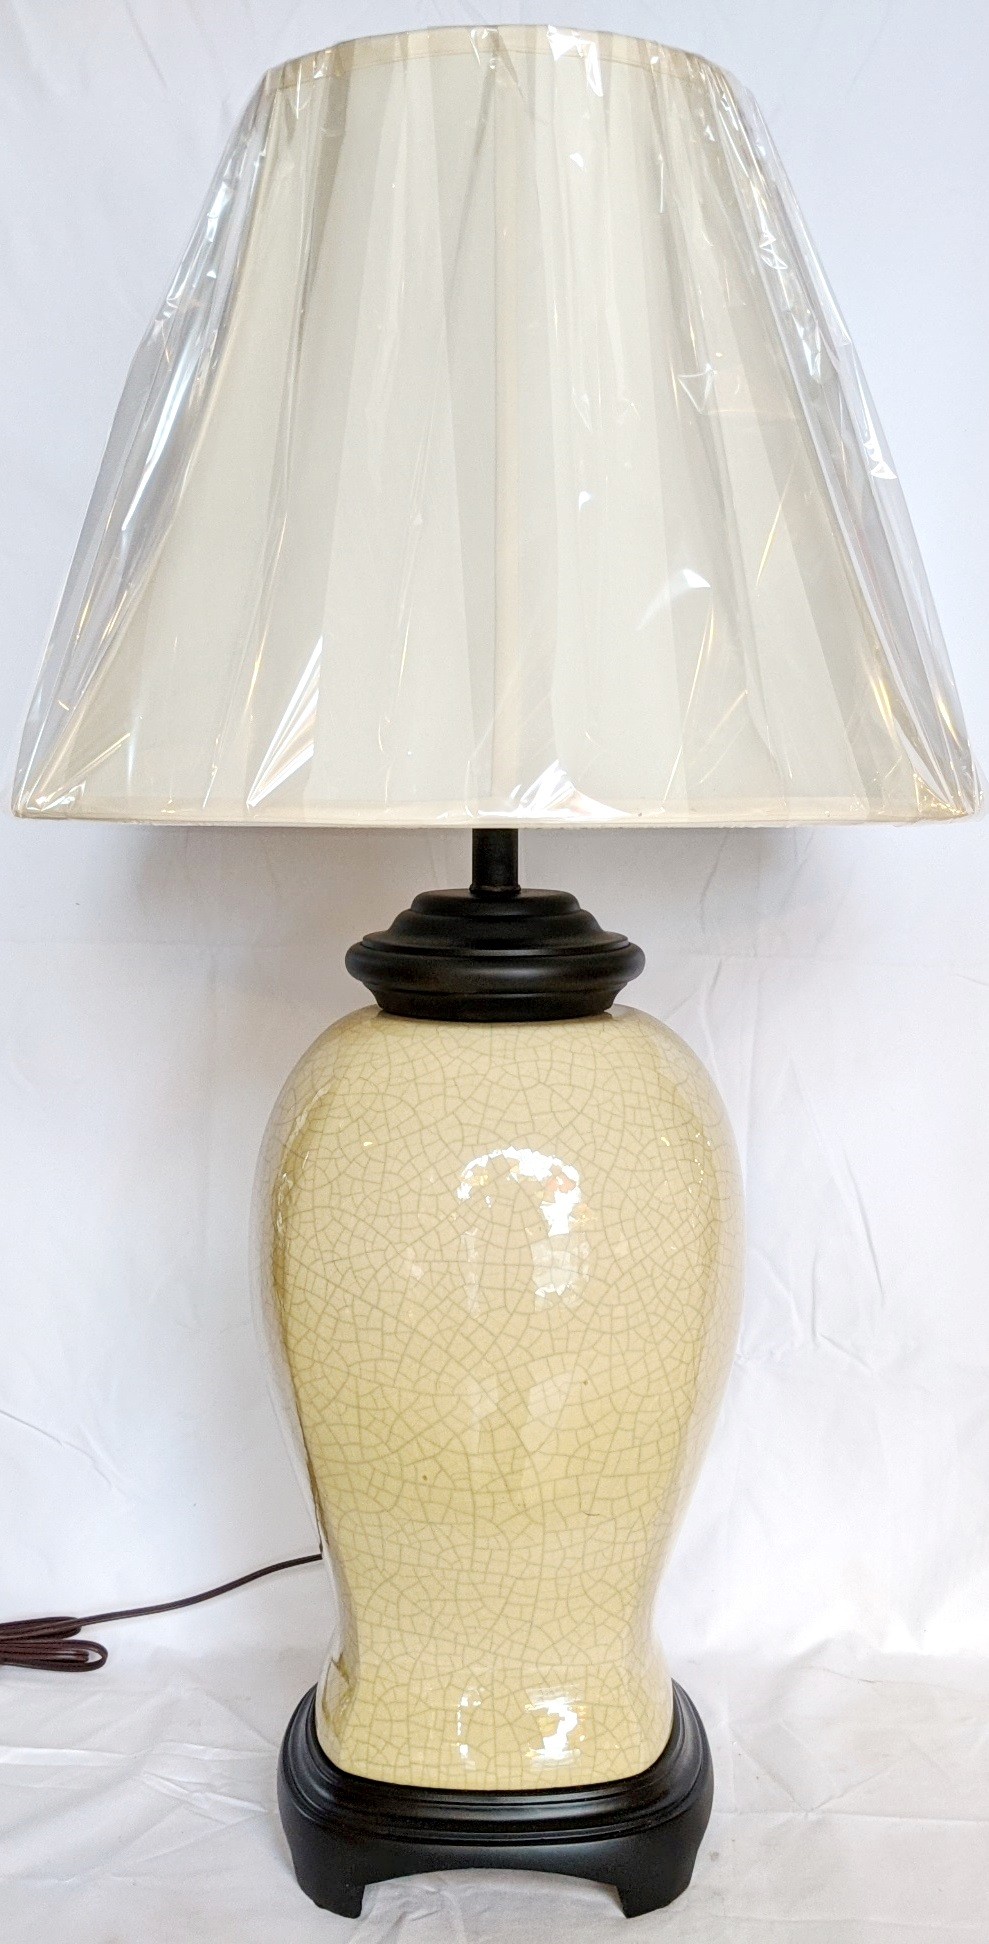 Vintage Crackle Porcelain Lamp 32"H - Sale !